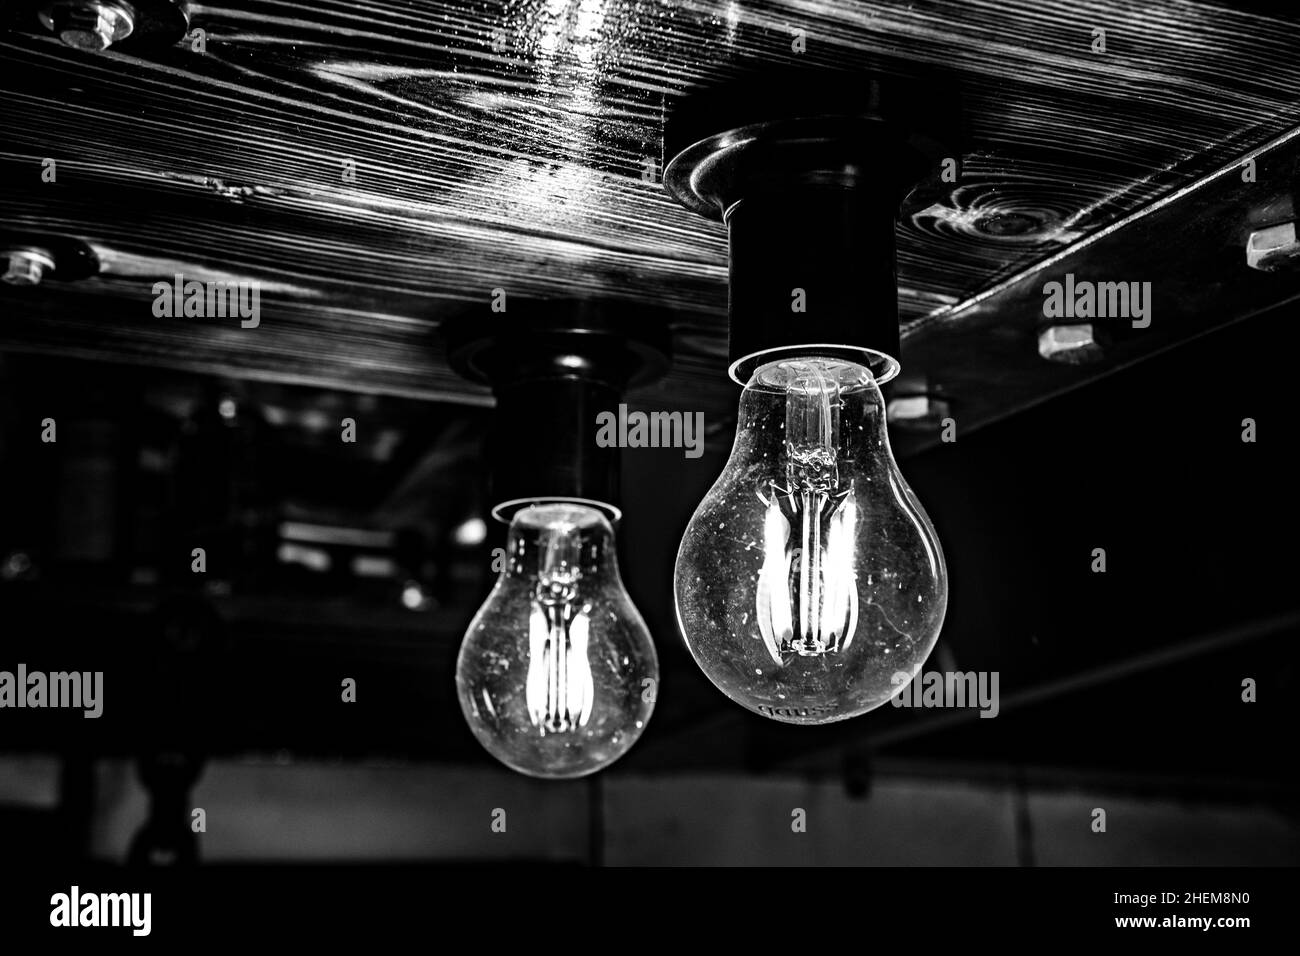 Bel éclairage de style vintage lampe montée sur un plafond en bois.Image en noir et blanc.Mise au point sélectionnée. Banque D'Images